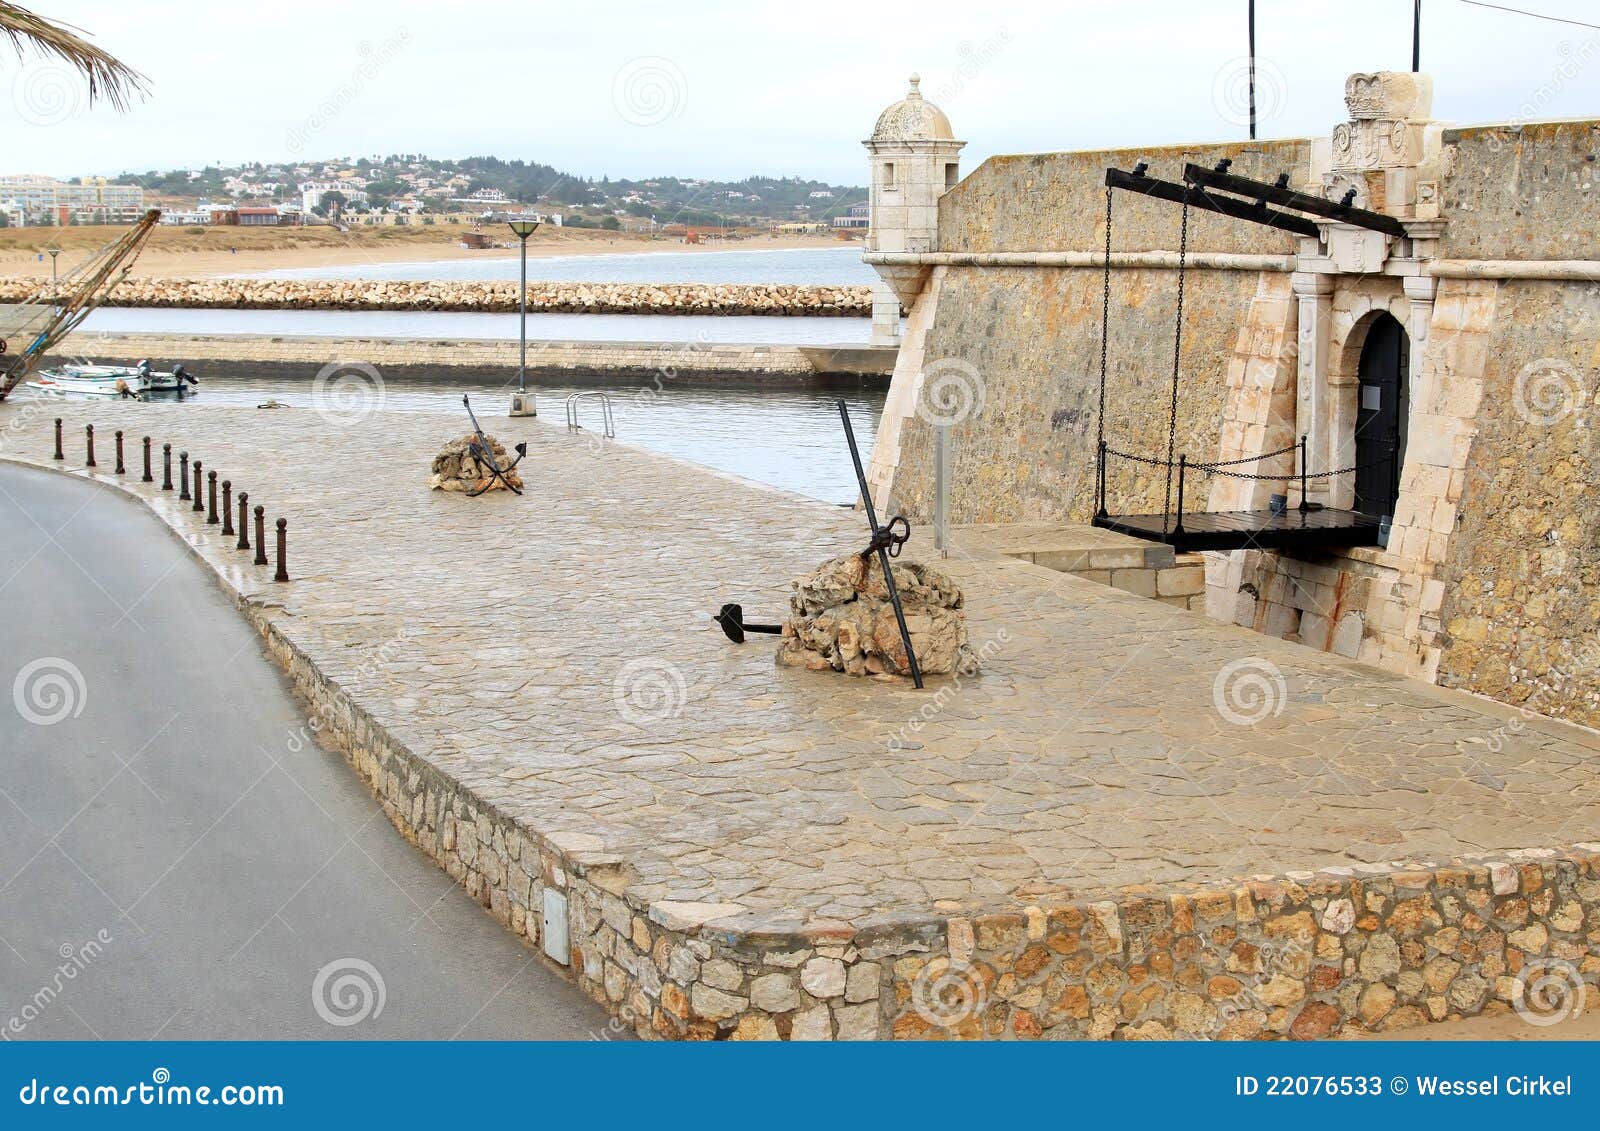 fort ponta da bandeira in lagos, algarve, portugal